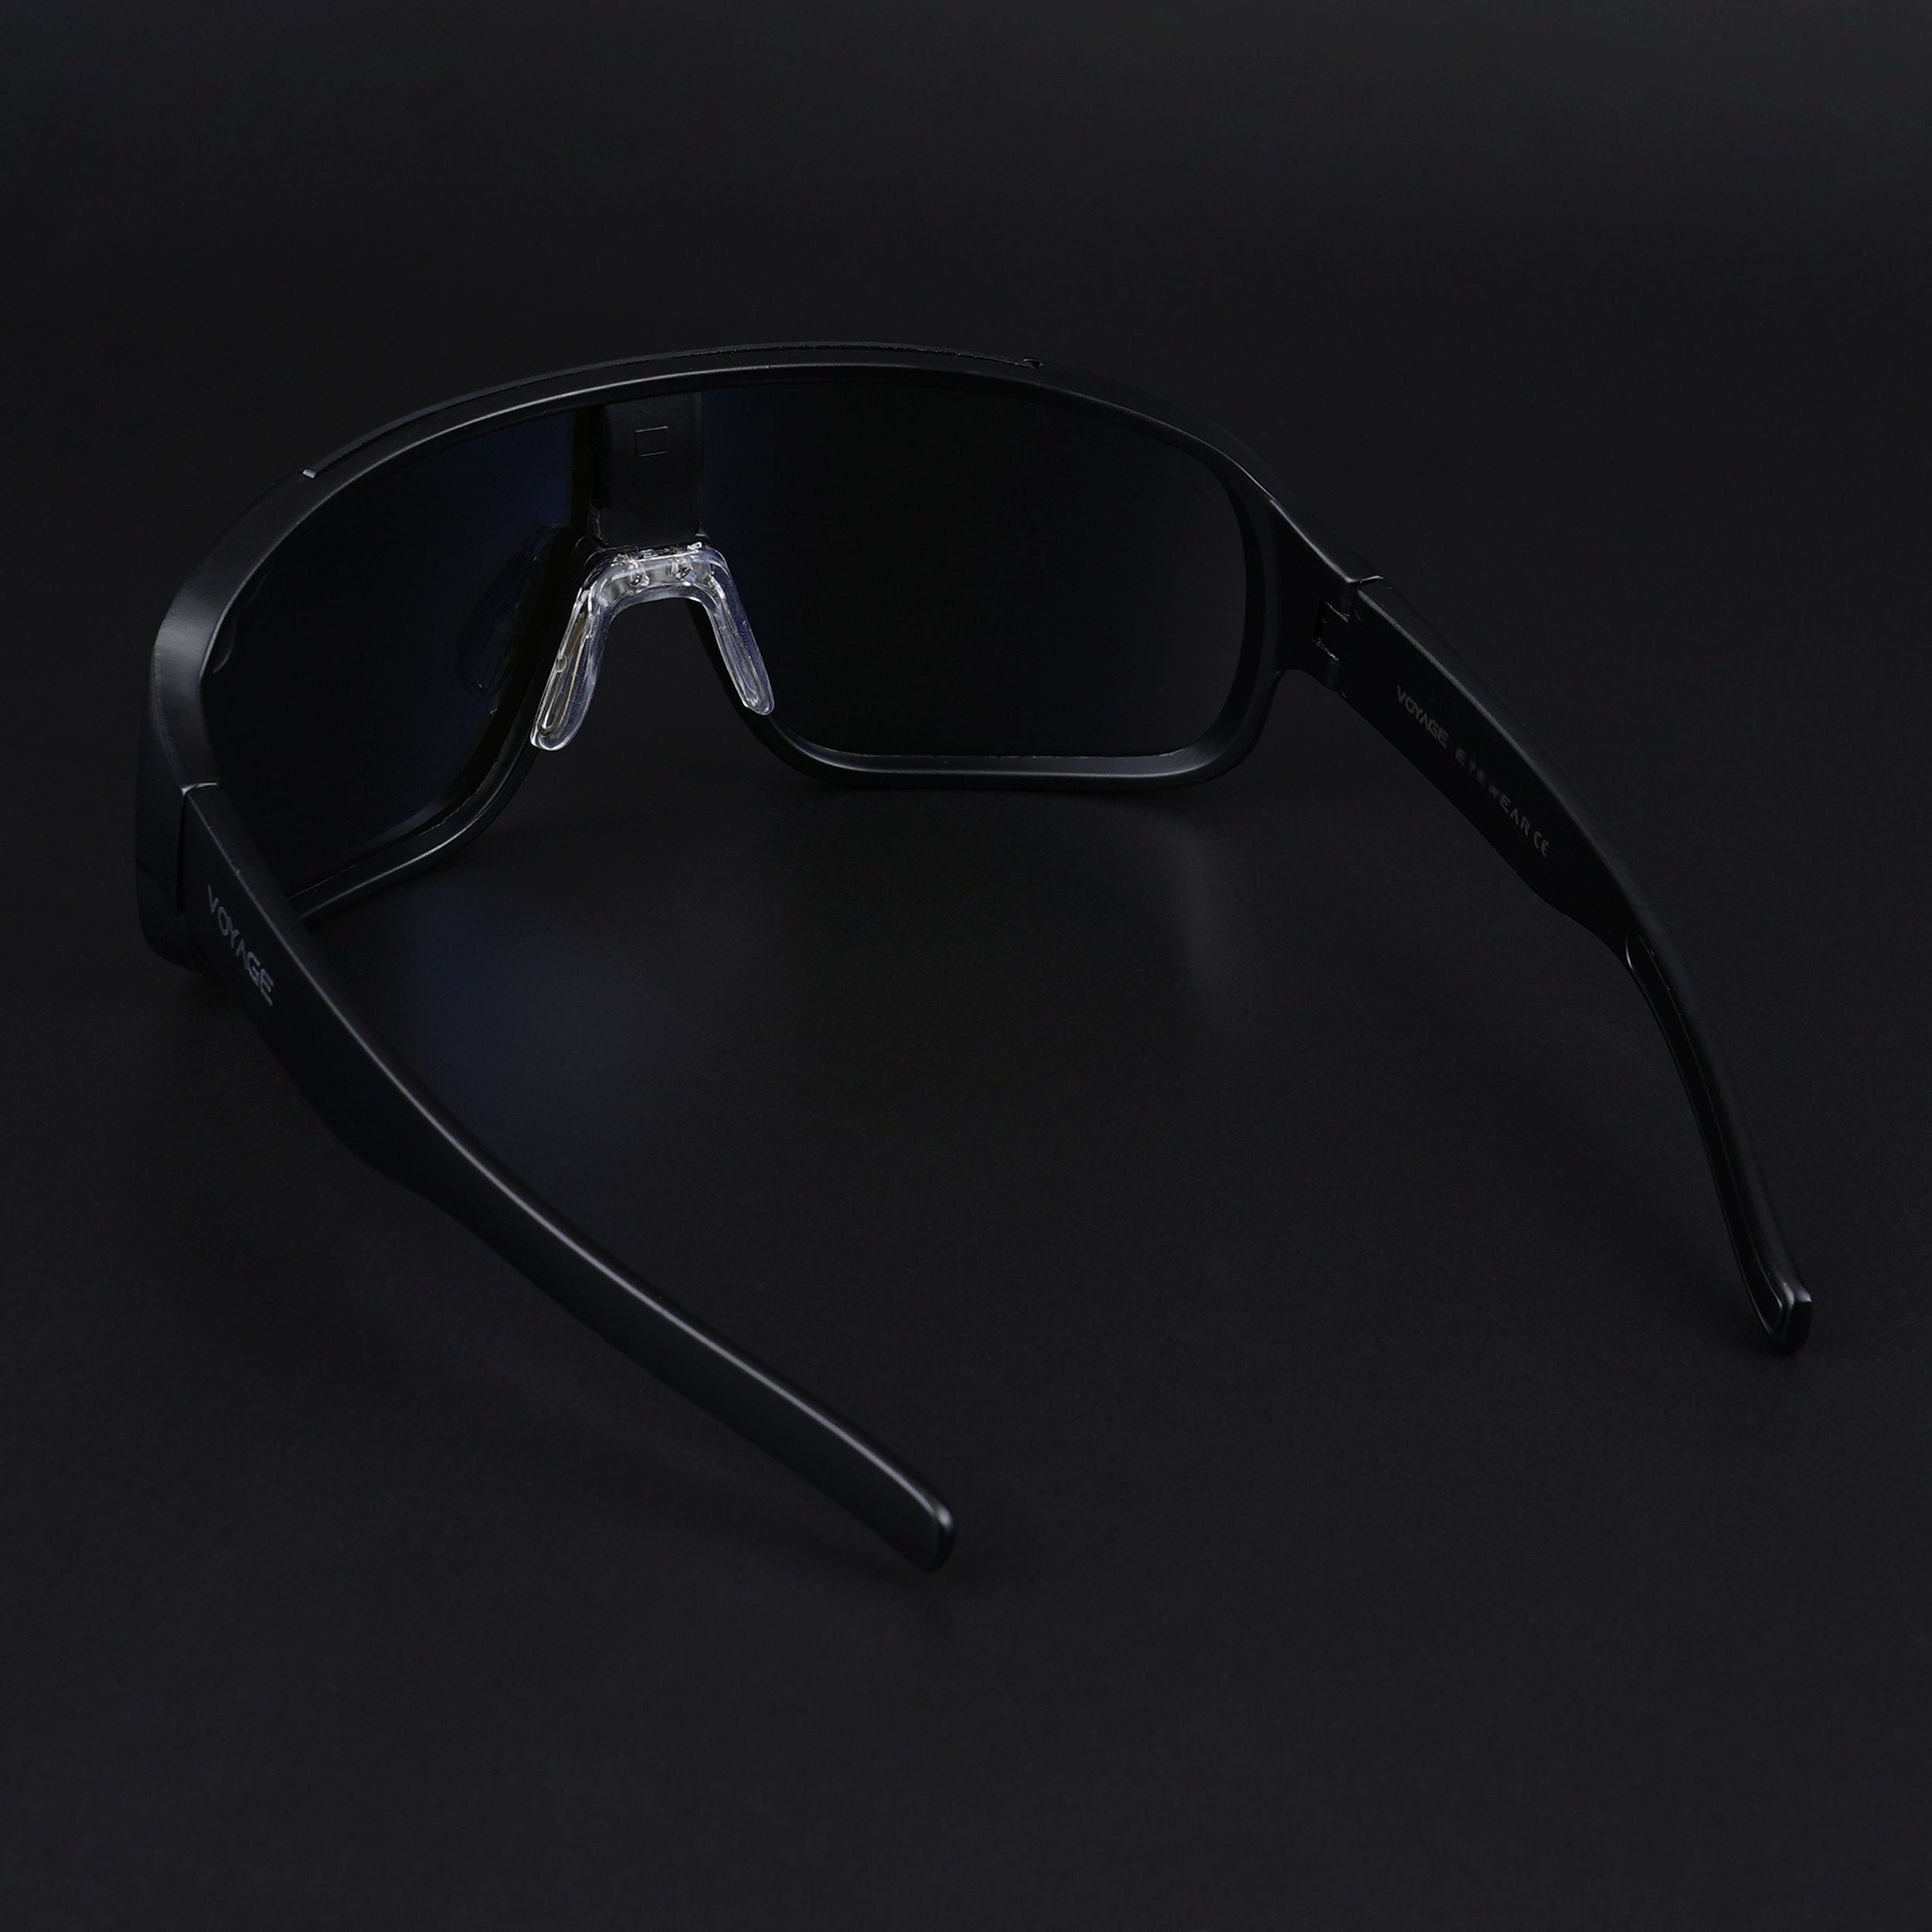 Voyage Drift Sunglasses for Men & Women (Blue Lens | Black Frame - MG5517)